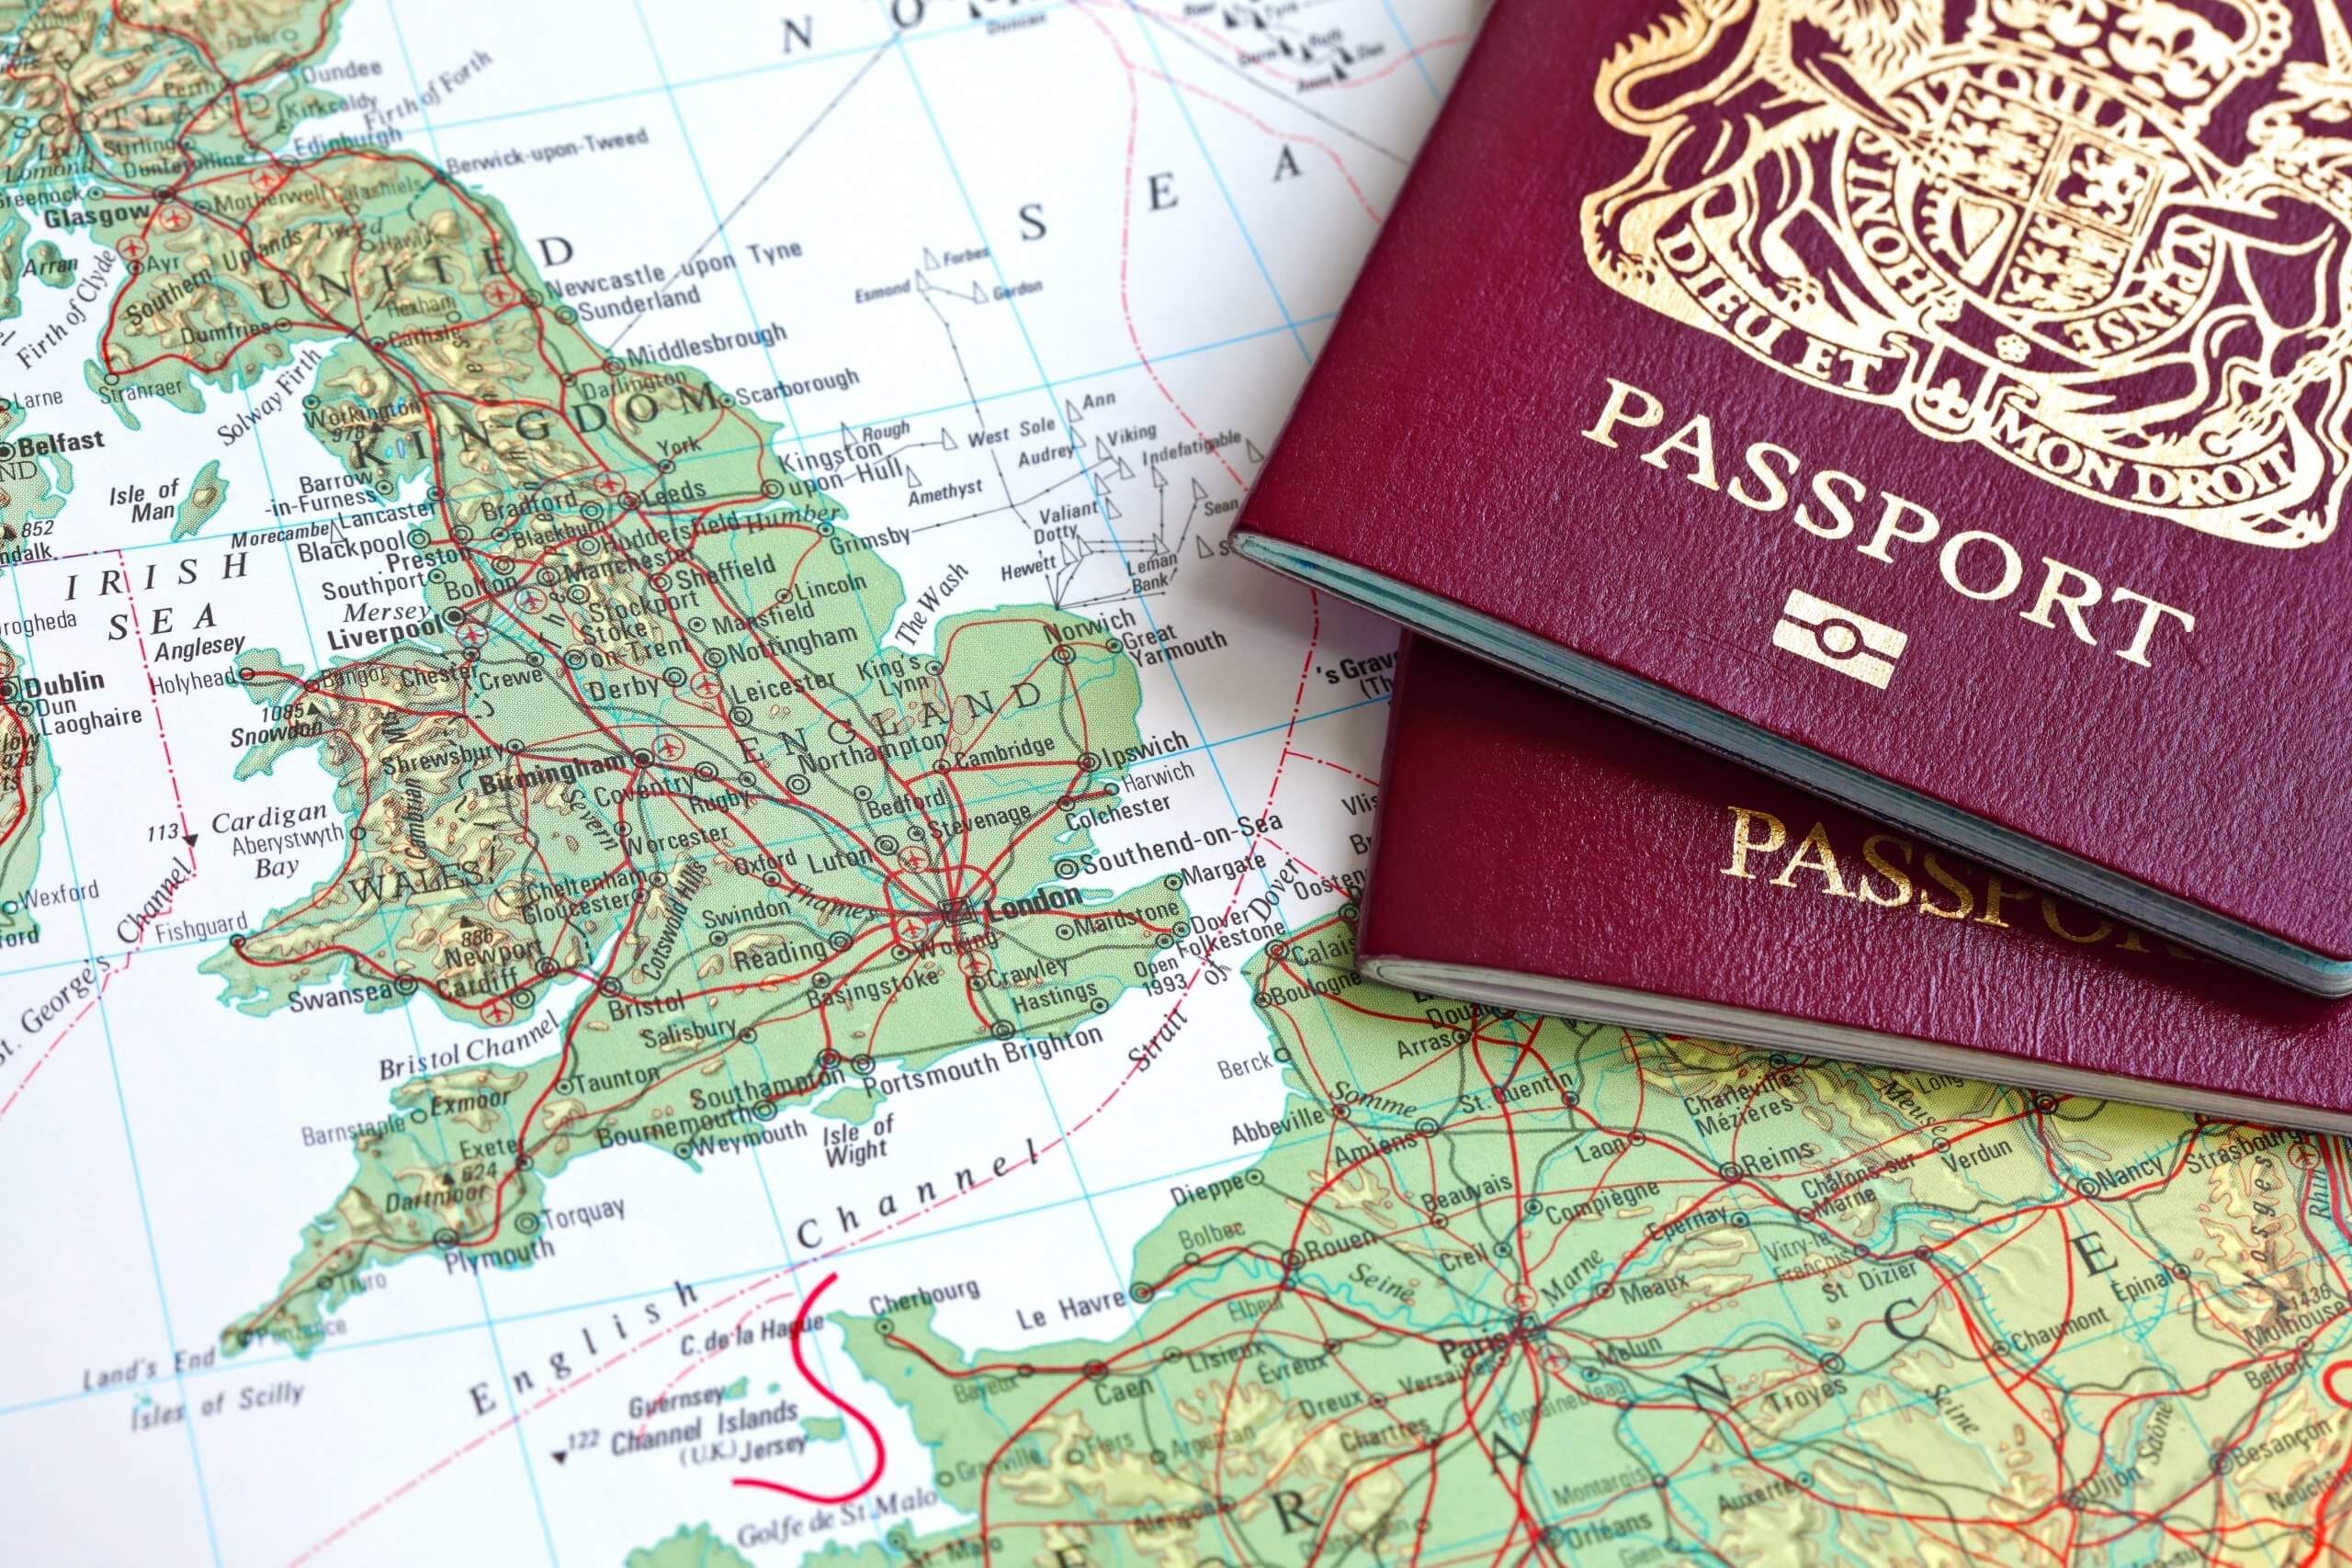 British passport and map of Europe